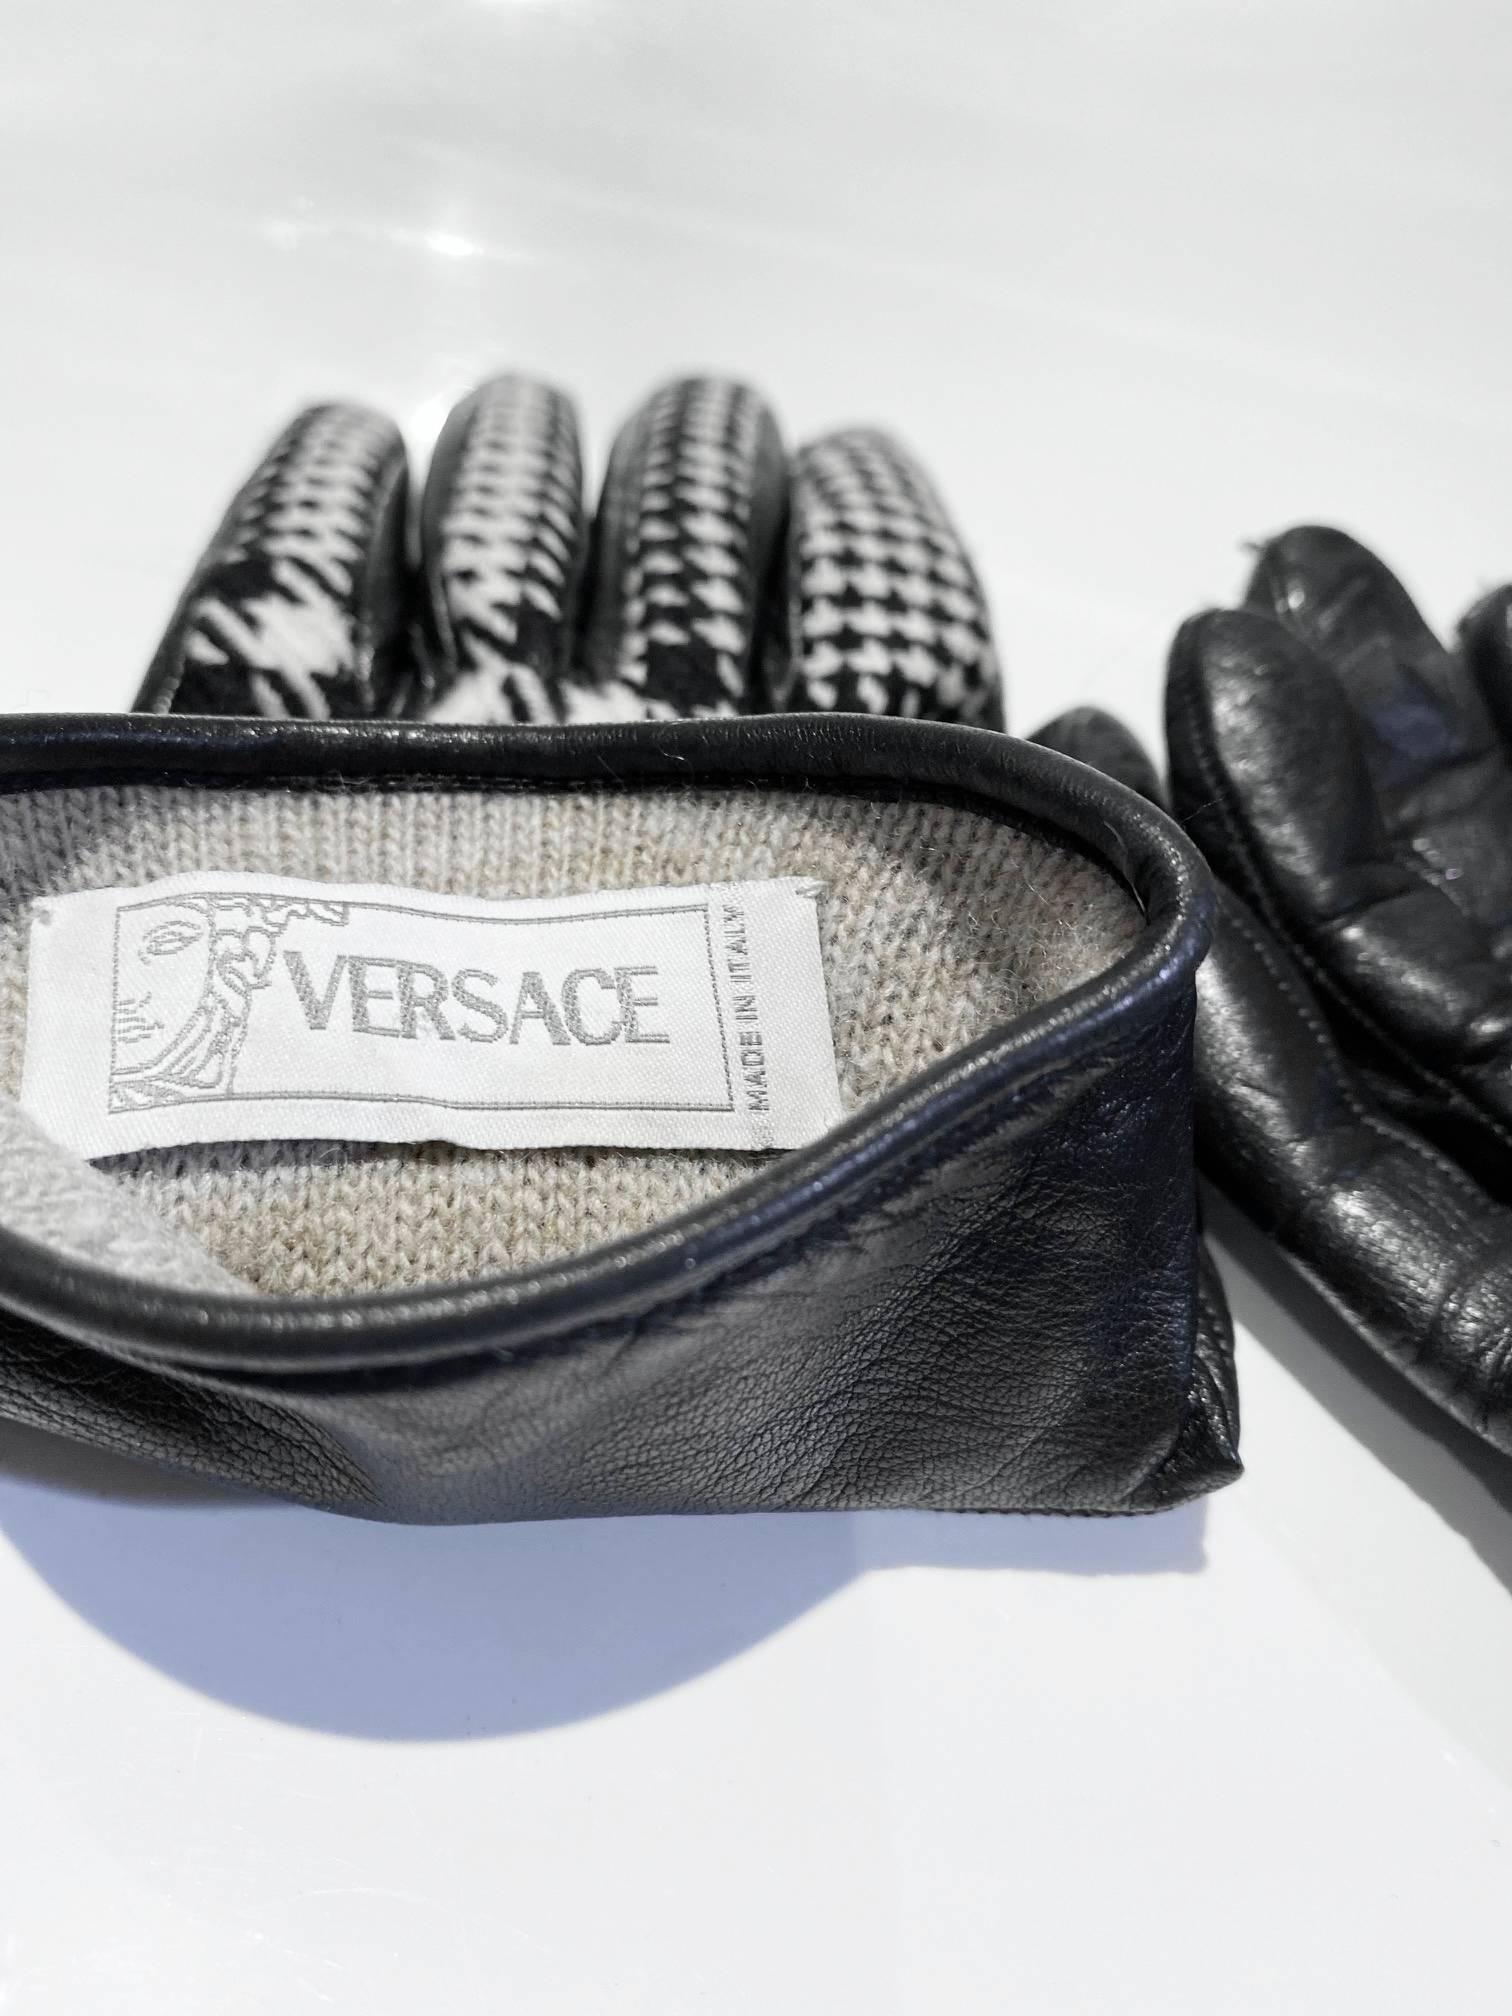 Gianni Versace Hundezahn-Winterhandschuhe aus Wolle, schwarzes Leder, silberfarbenes Medusa-Metall-Logo, Made in Italy 
Zustand: 1990er, vintage, gut, leichte Gebrauchsspuren am Leder 
Größe: 7.5 - klein